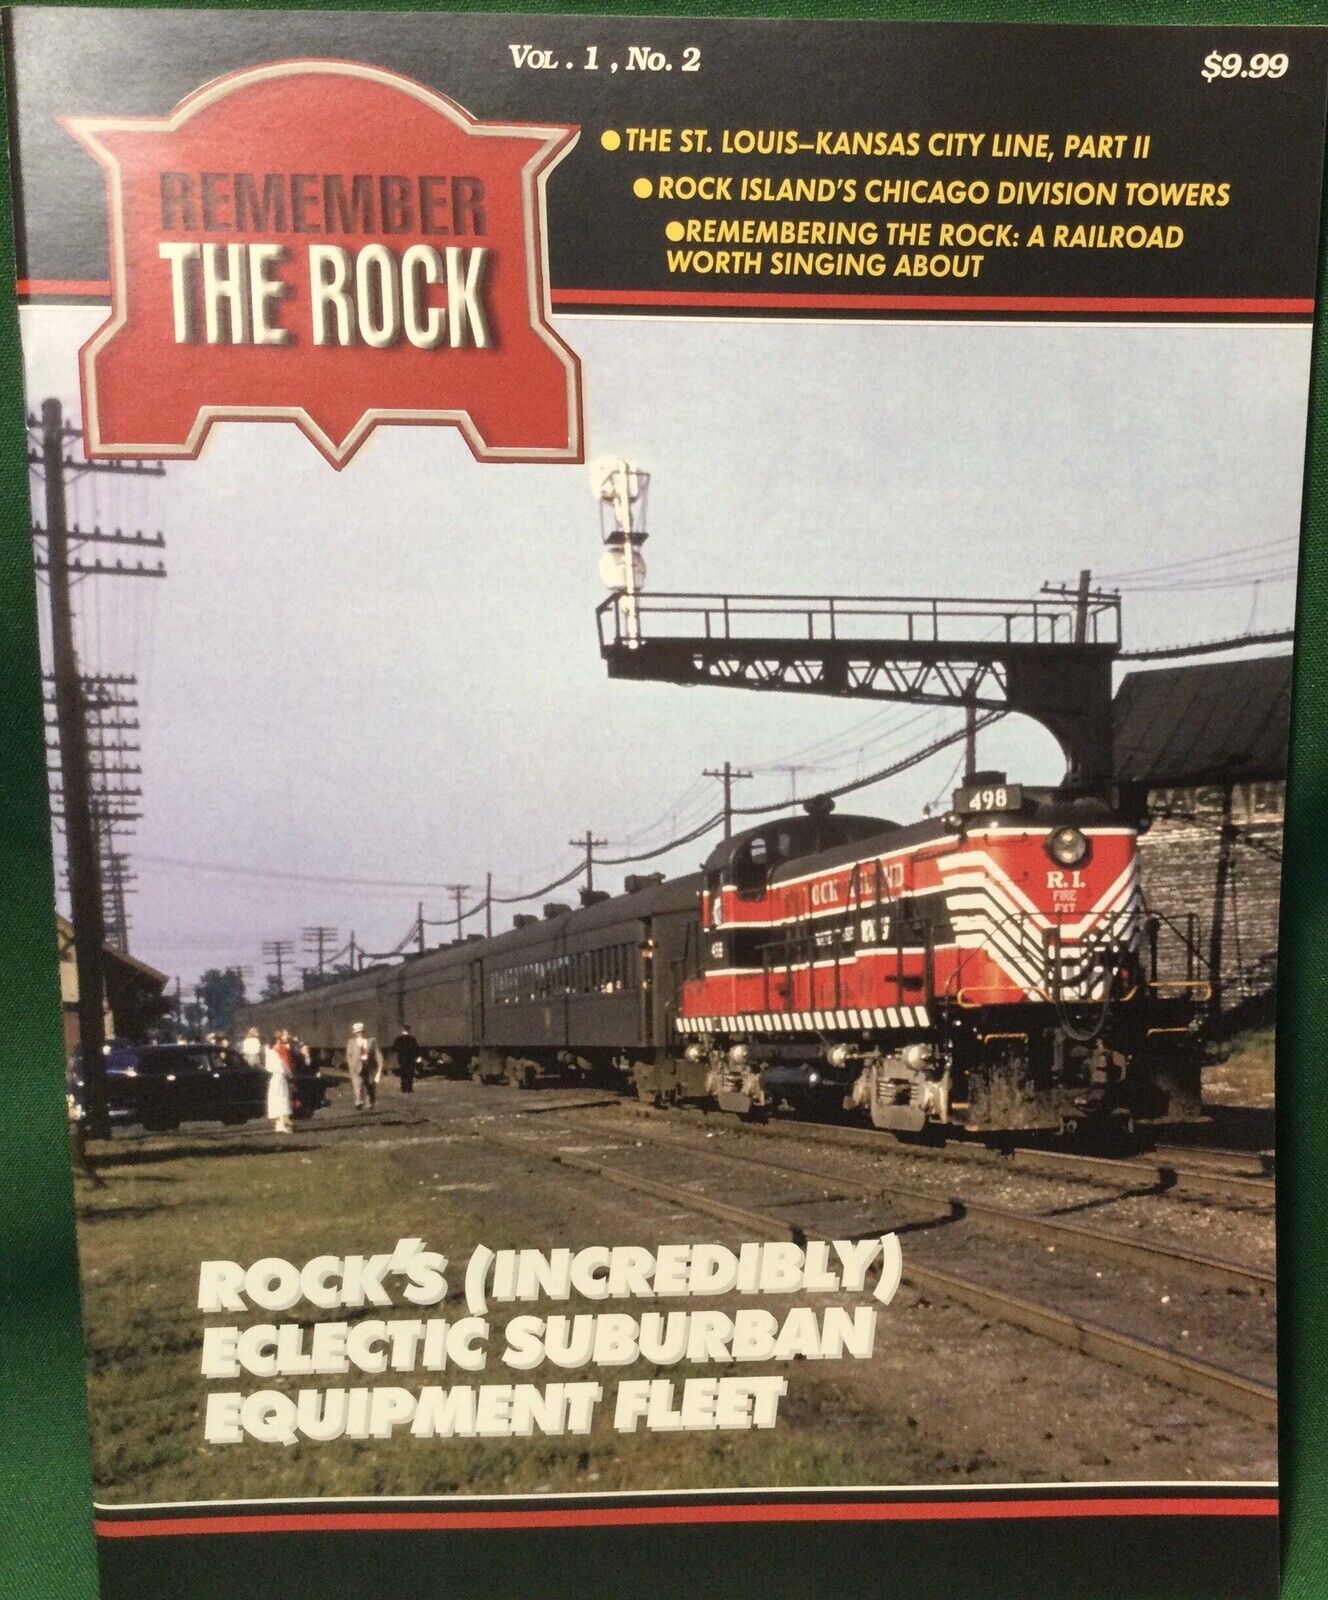 Remember The Rock (Rock Island) Railroad Magazine Vol 1, No. 2